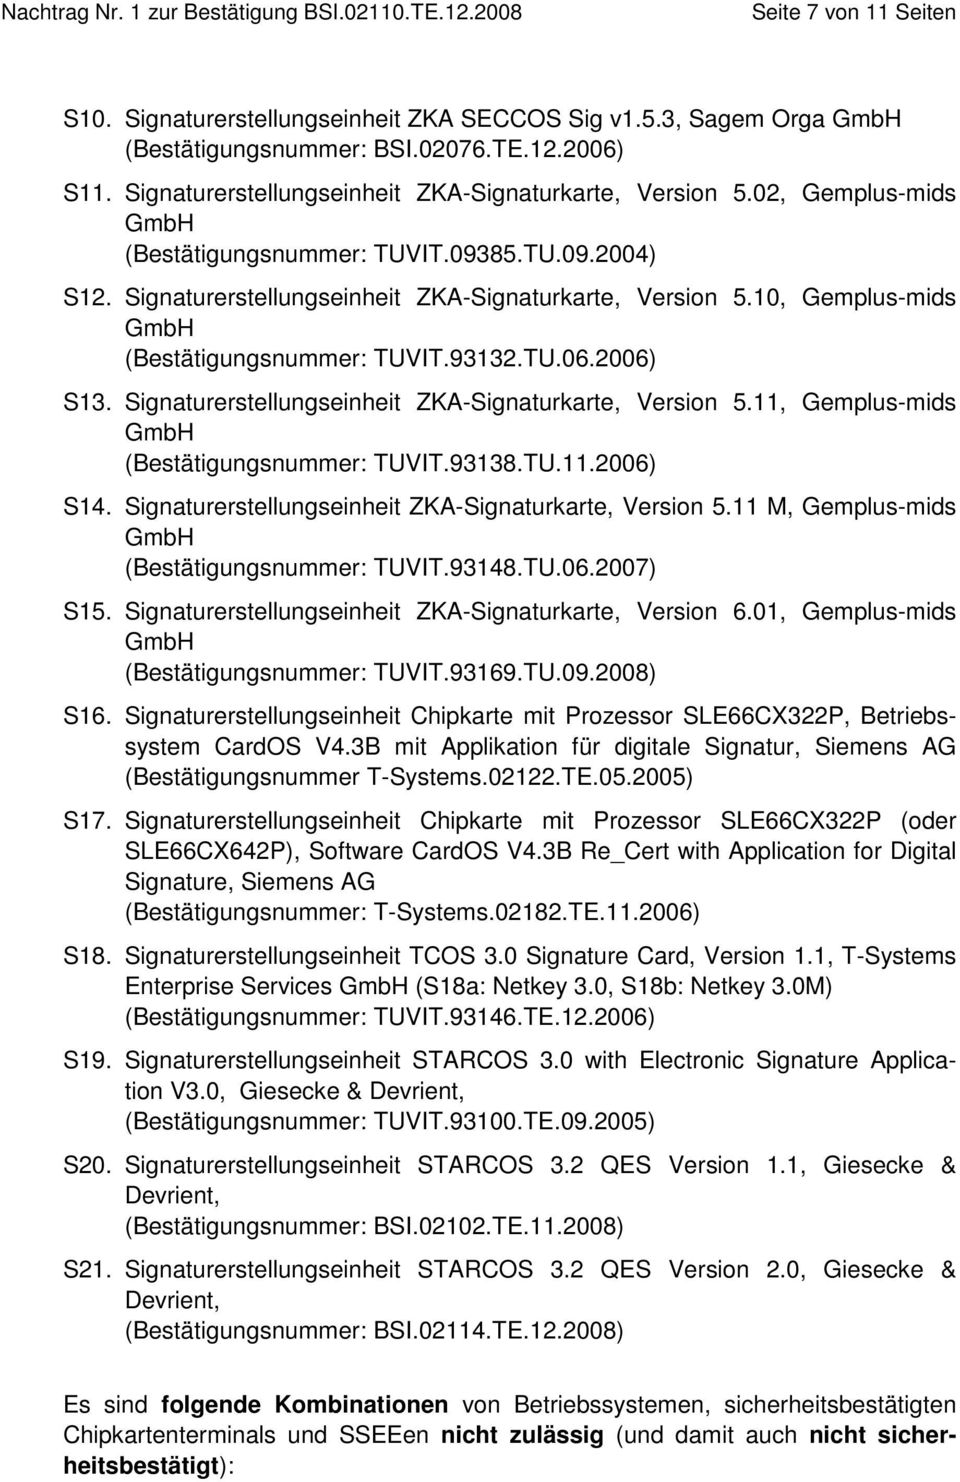 Signaturerstellungseinheit ZKA-Signaturkarte, Version 5.11, Gemplus-mids GmbH (Bestätigungsnummer: TUVIT.93138.TU.11.2006) S14. Signaturerstellungseinheit ZKA-Signaturkarte, Version 5.